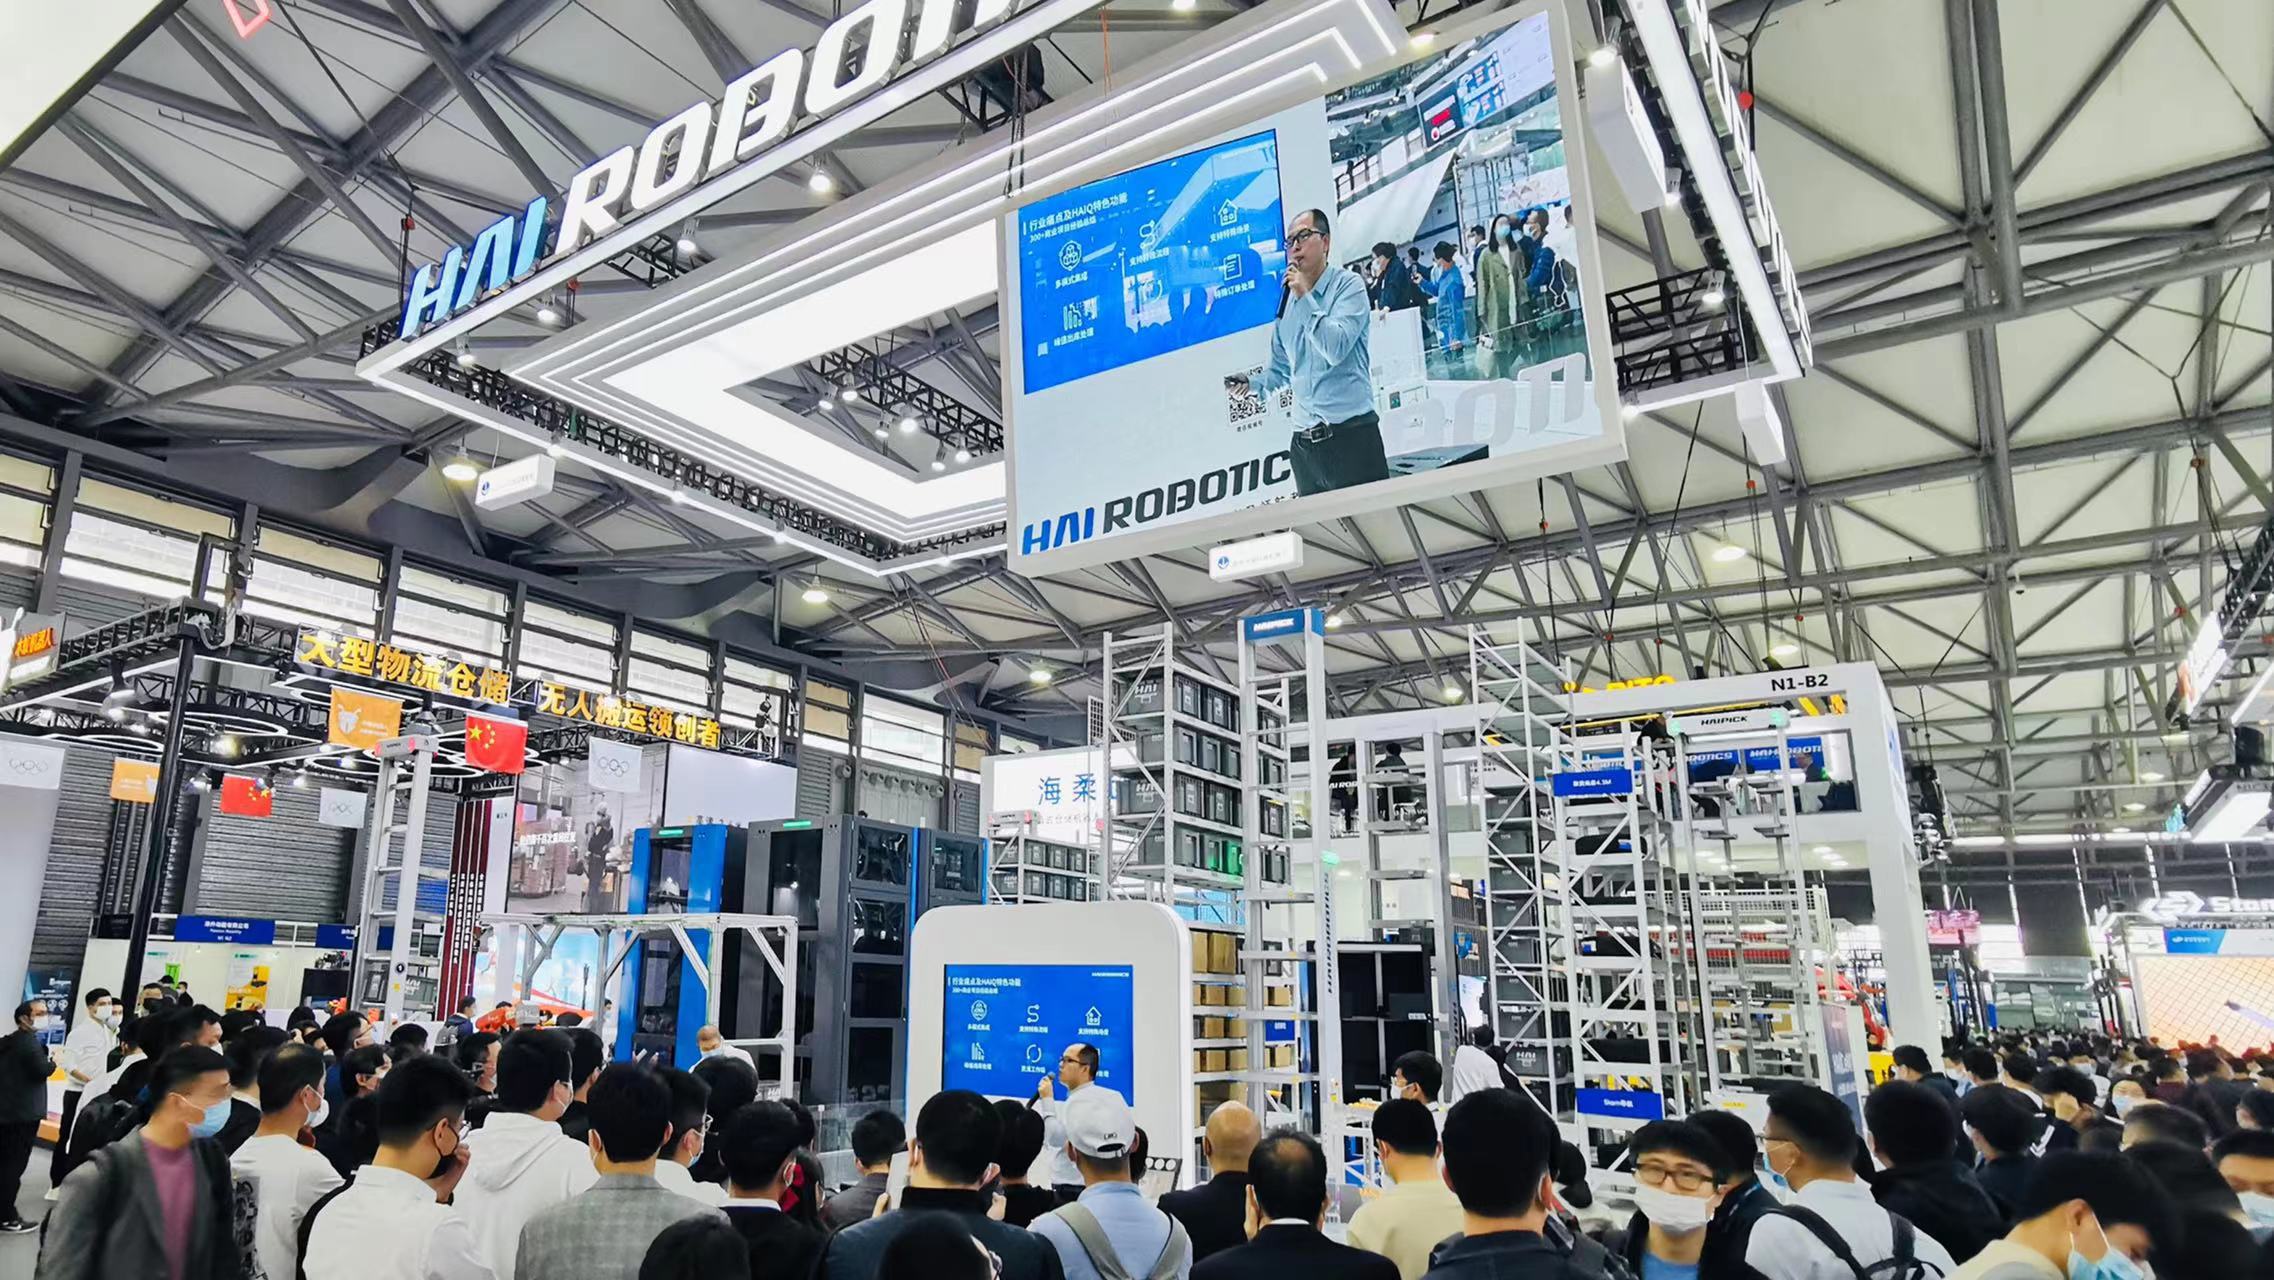 HAI ROBOTICS는 CeMAT Asia 2021에서 3가지 새로운 제품을 공개하며 창고 자동화의 새로운 선구자를 모색합니다